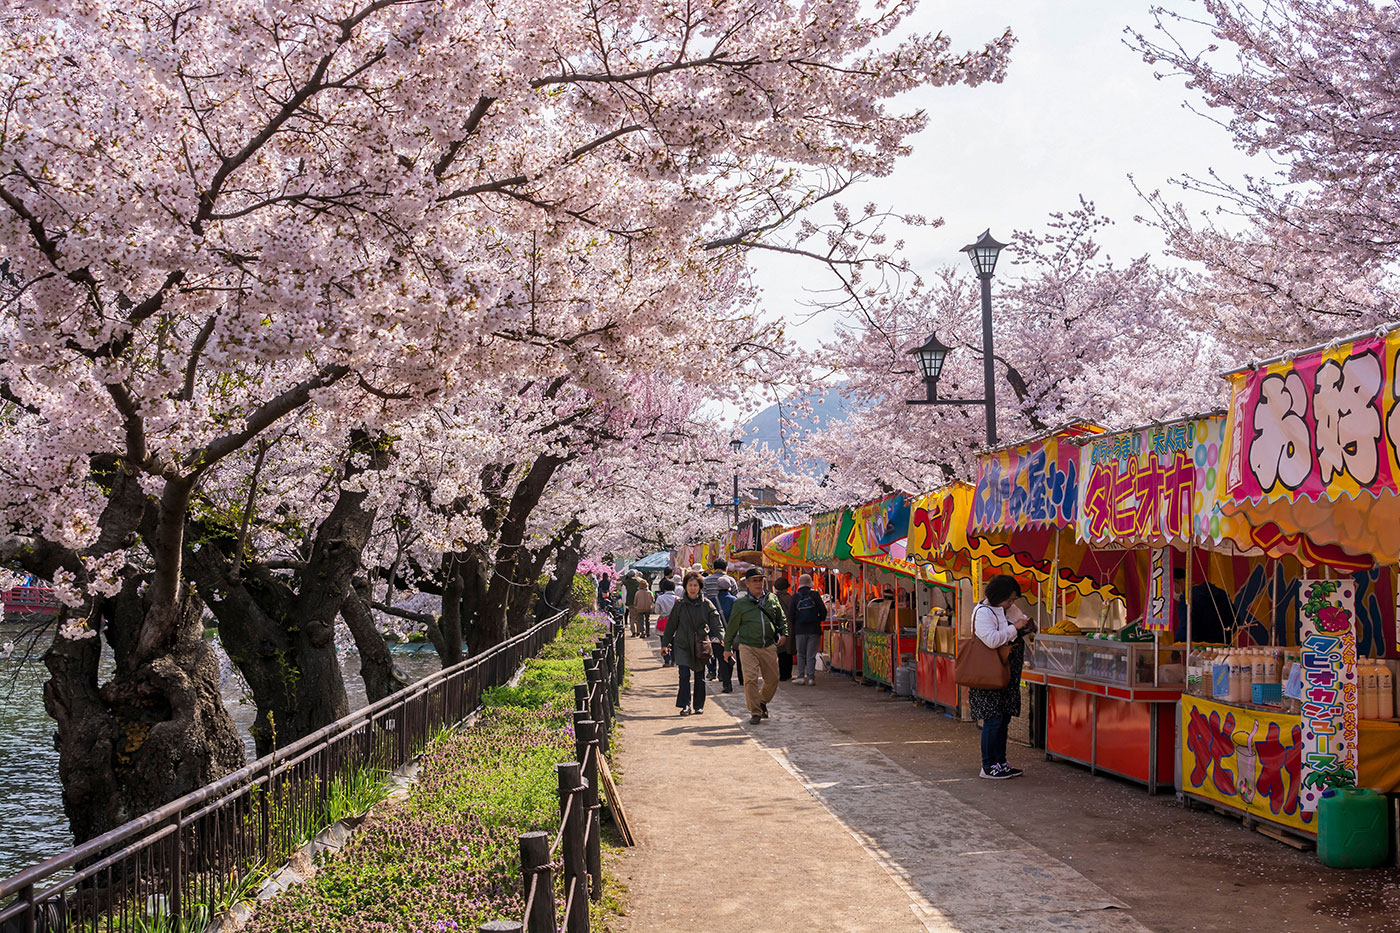 長野にある臥竜公園では、川沿いの魅力的な市場に沿って並ぶ桜の美しさを堪能できます